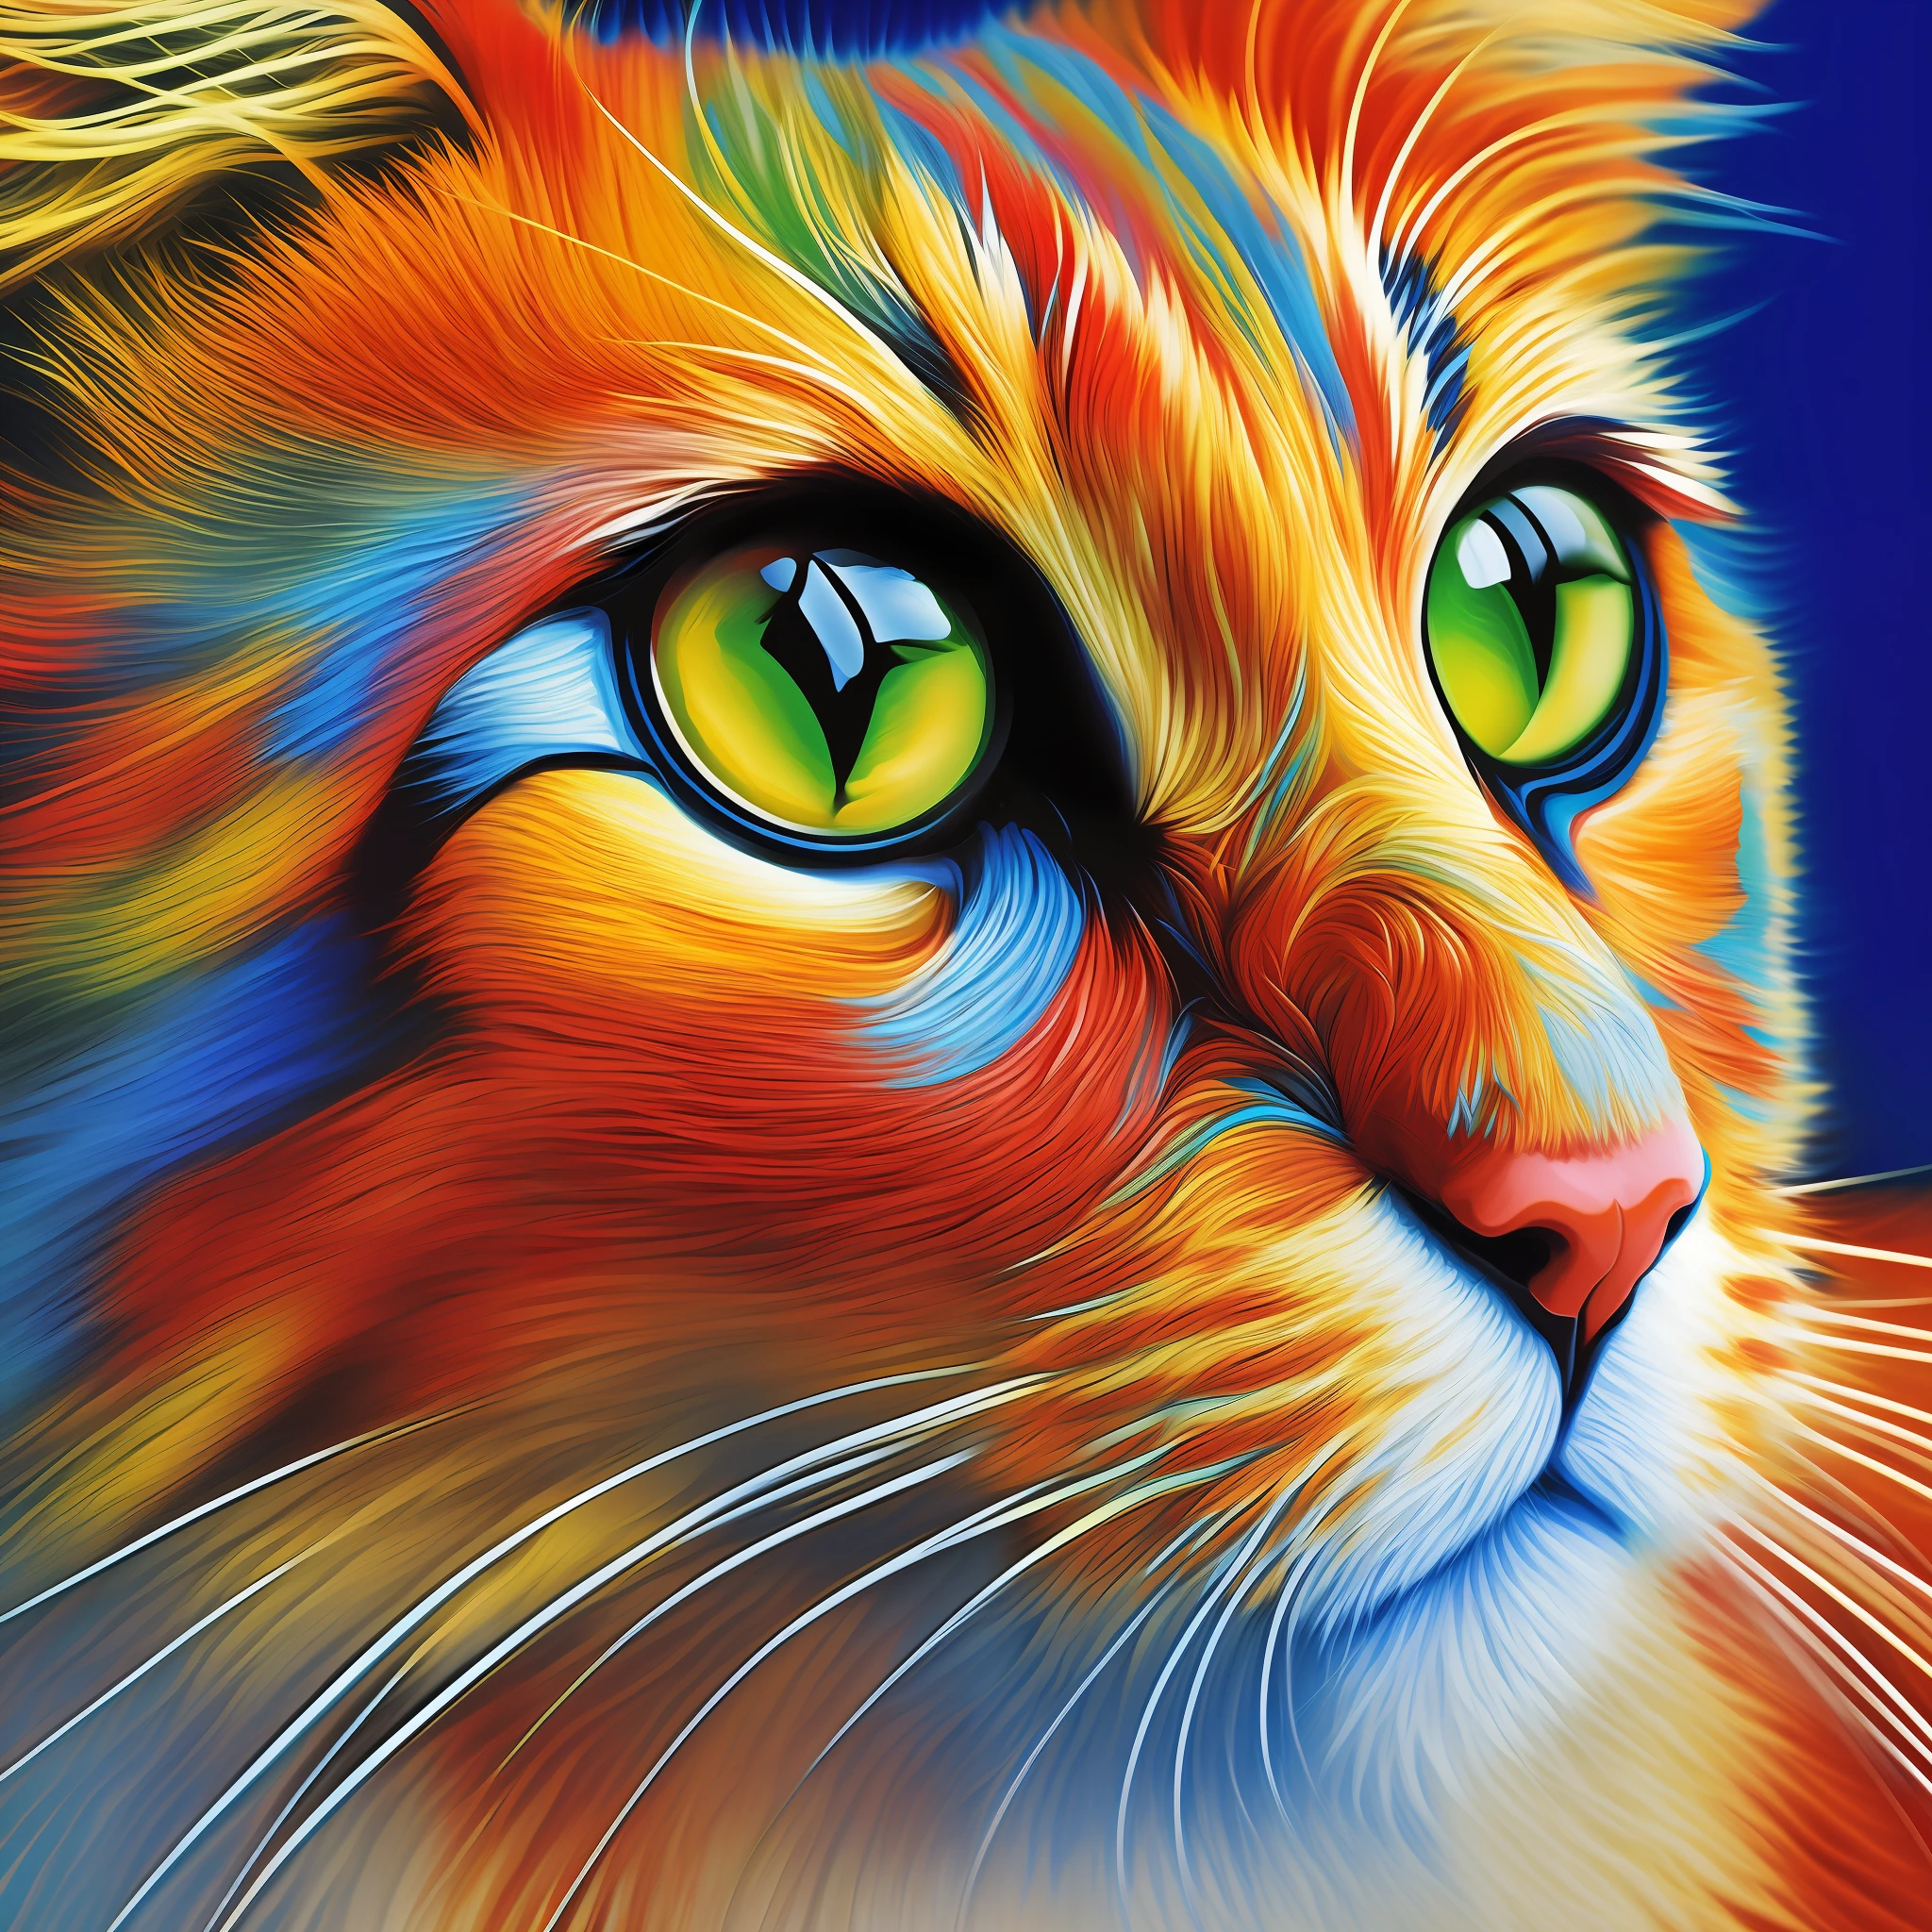 Arte abstracto del gato.